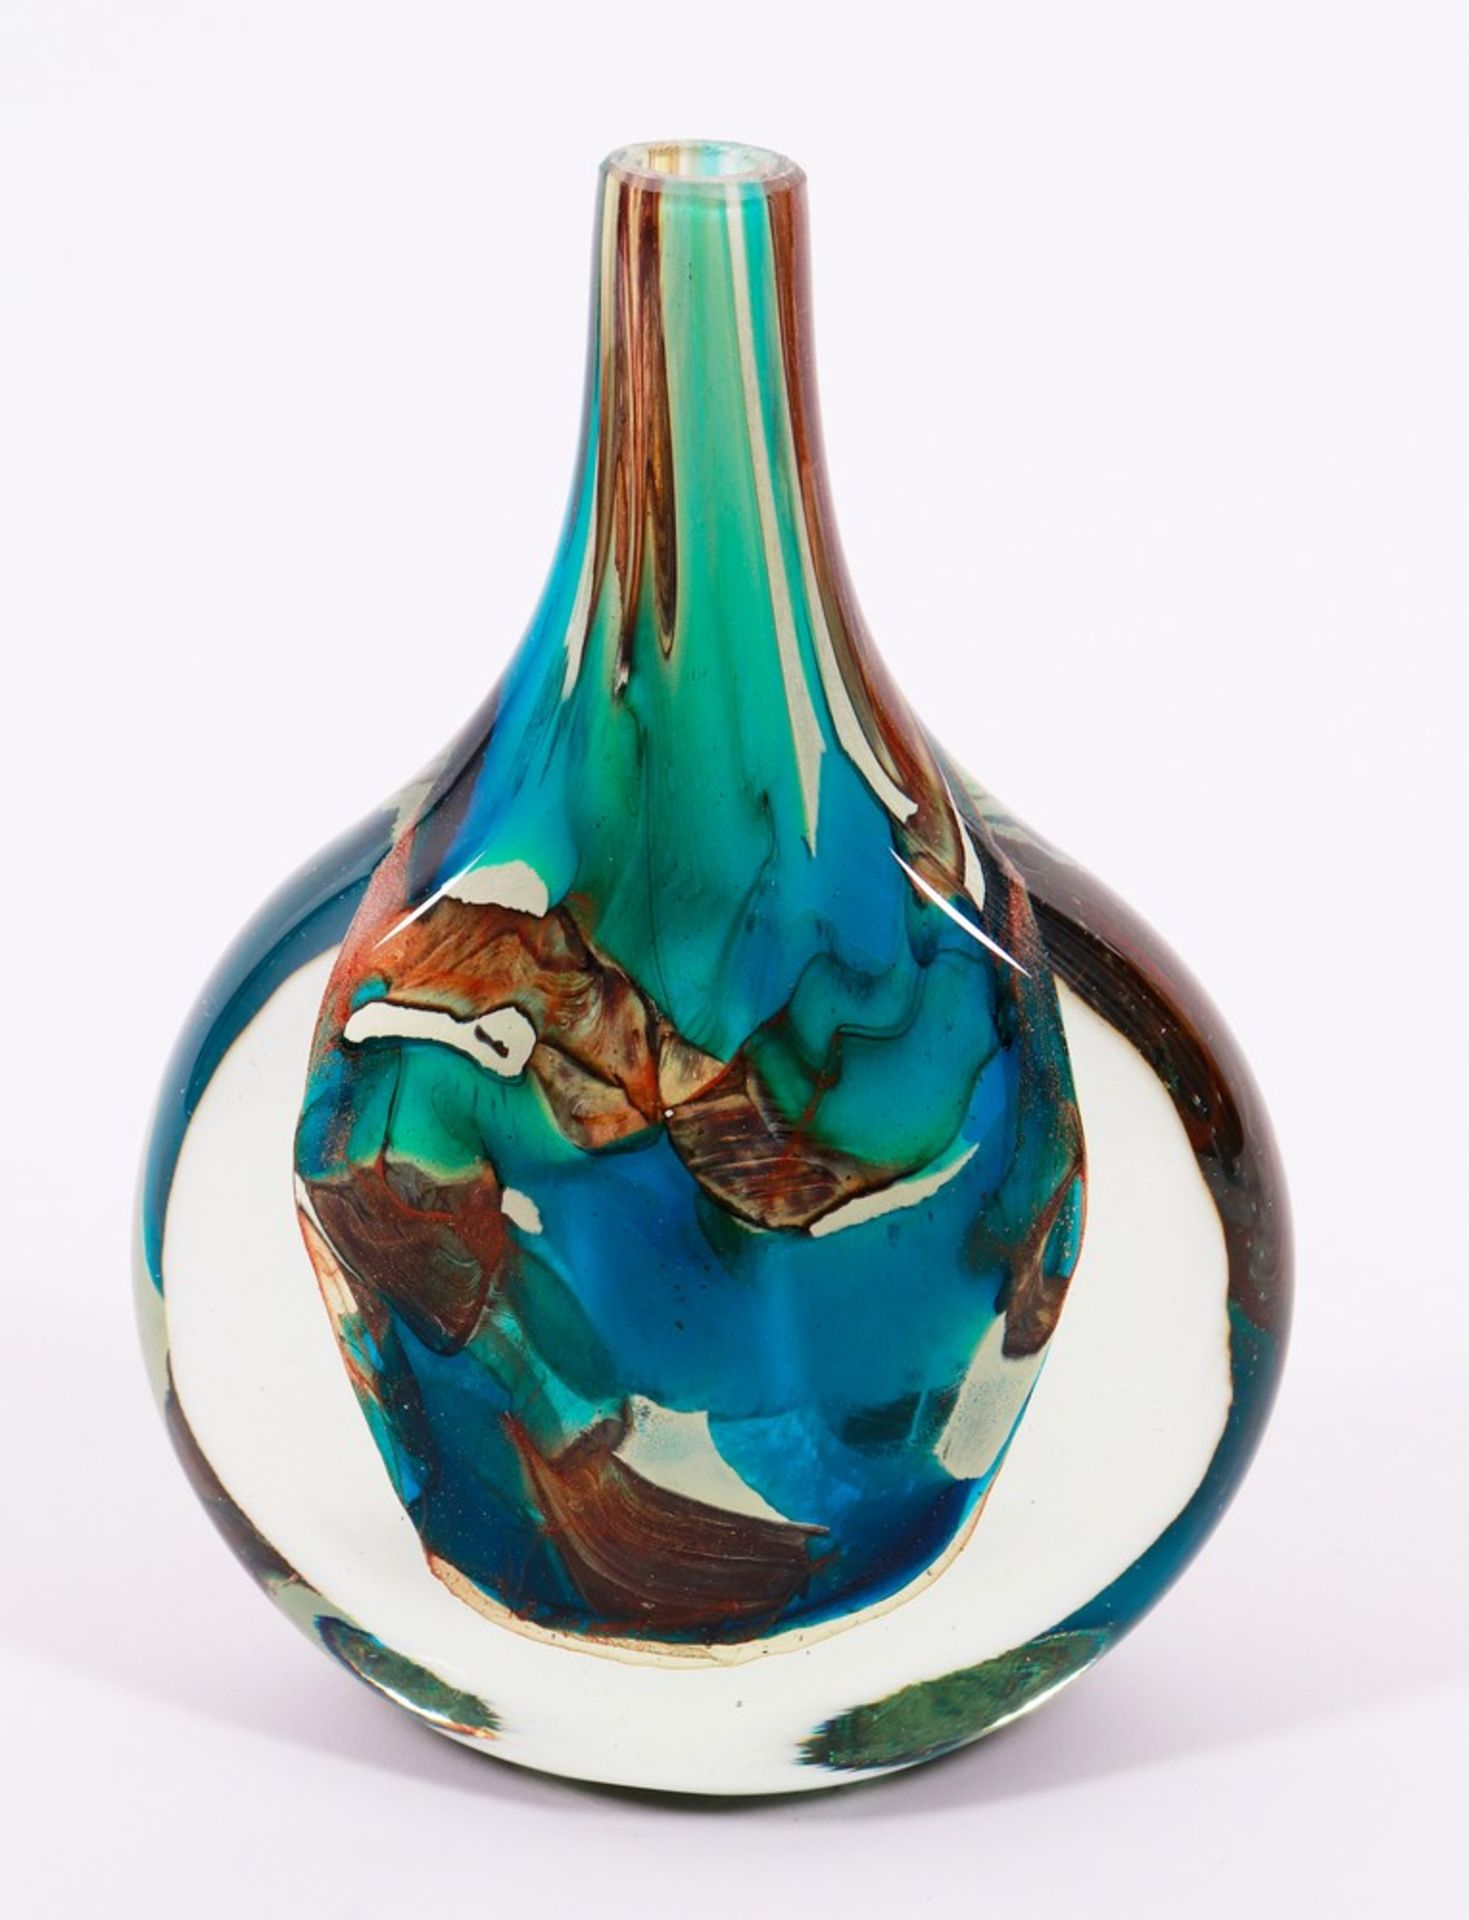 Studioglas-Vase, Entwurf Michael Harris, Ausführung Mdina, Malta, 1980er Jahre